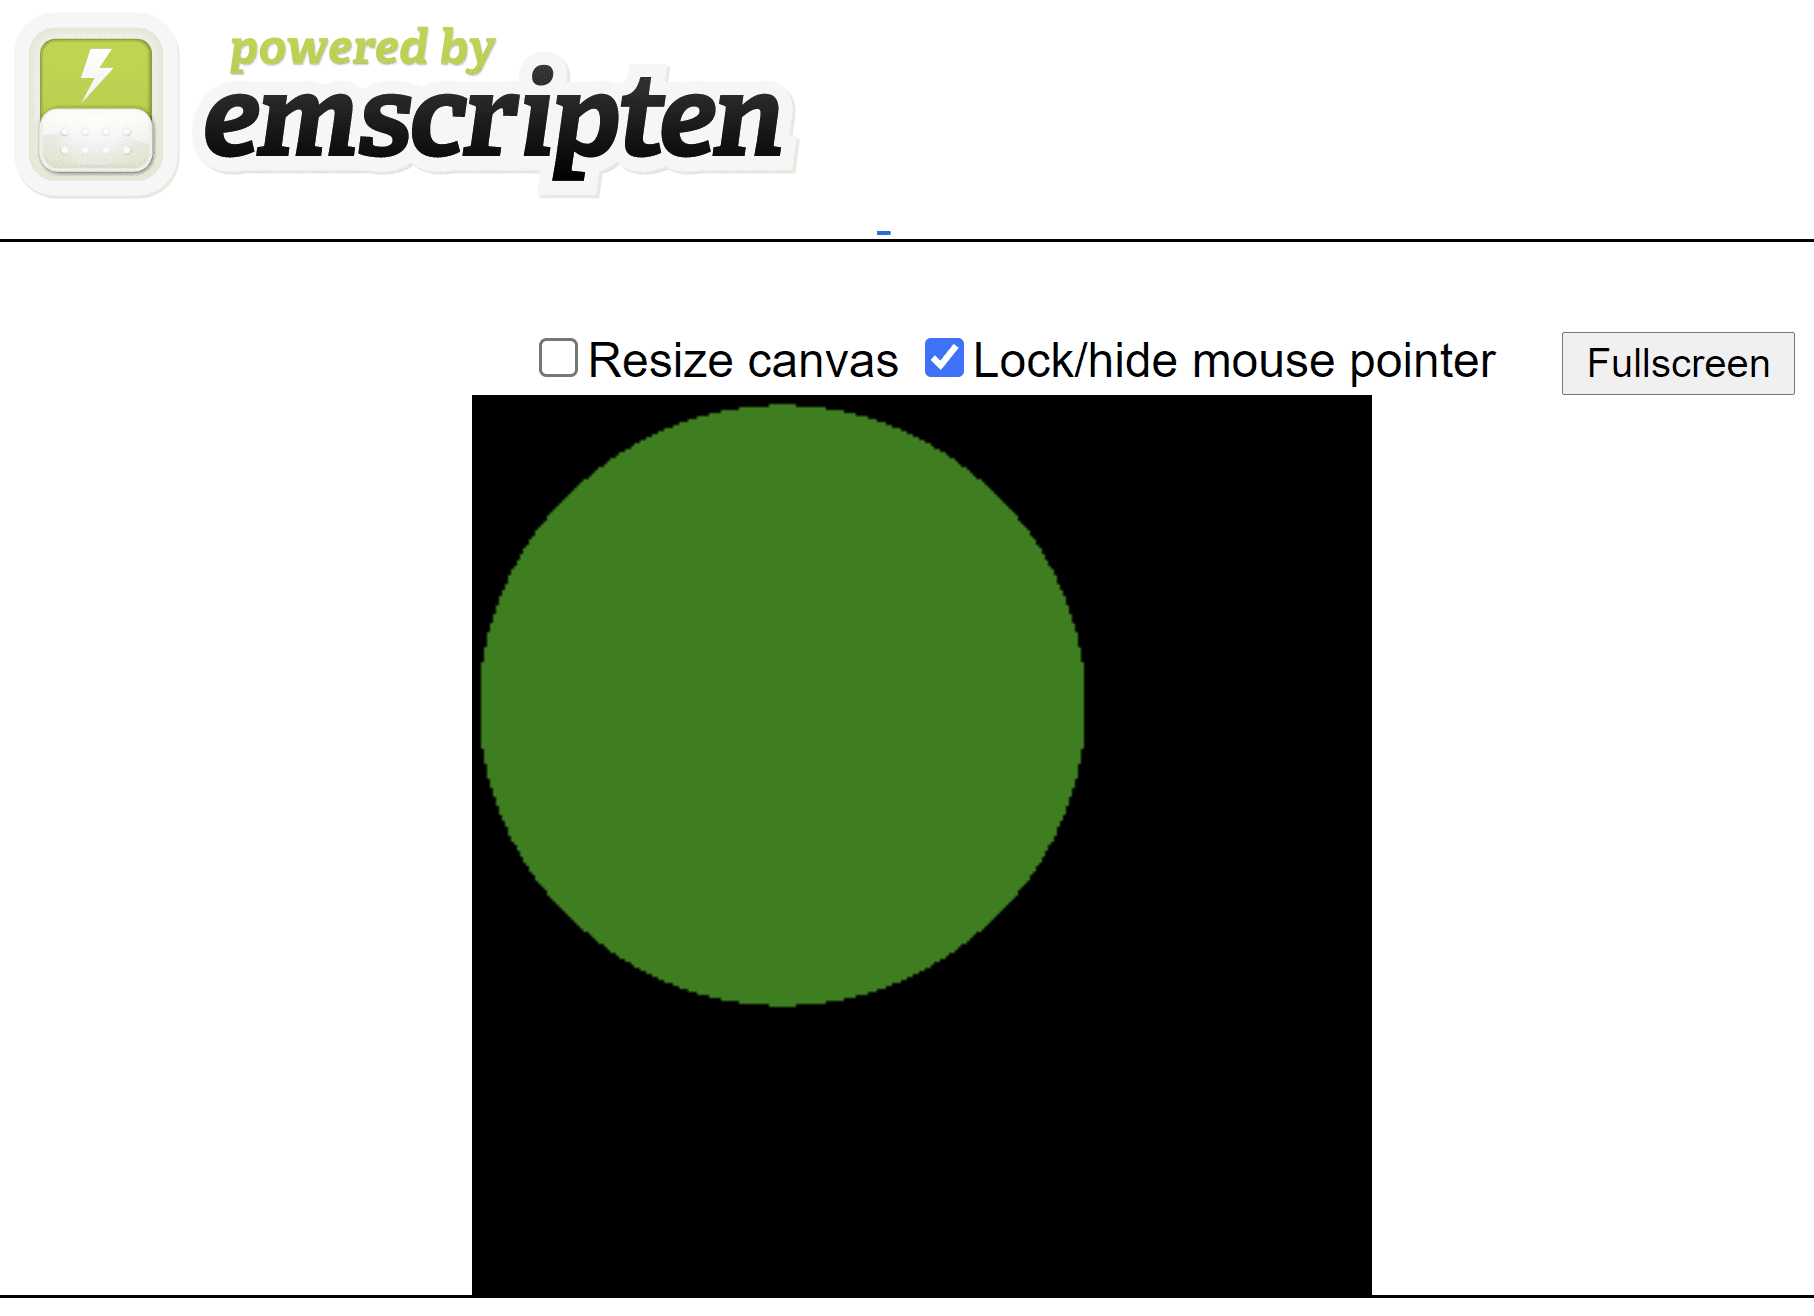 검은색 정사각형 캔버스에 녹색 원이 표시된 엠스크립트 생성 HTML 페이지